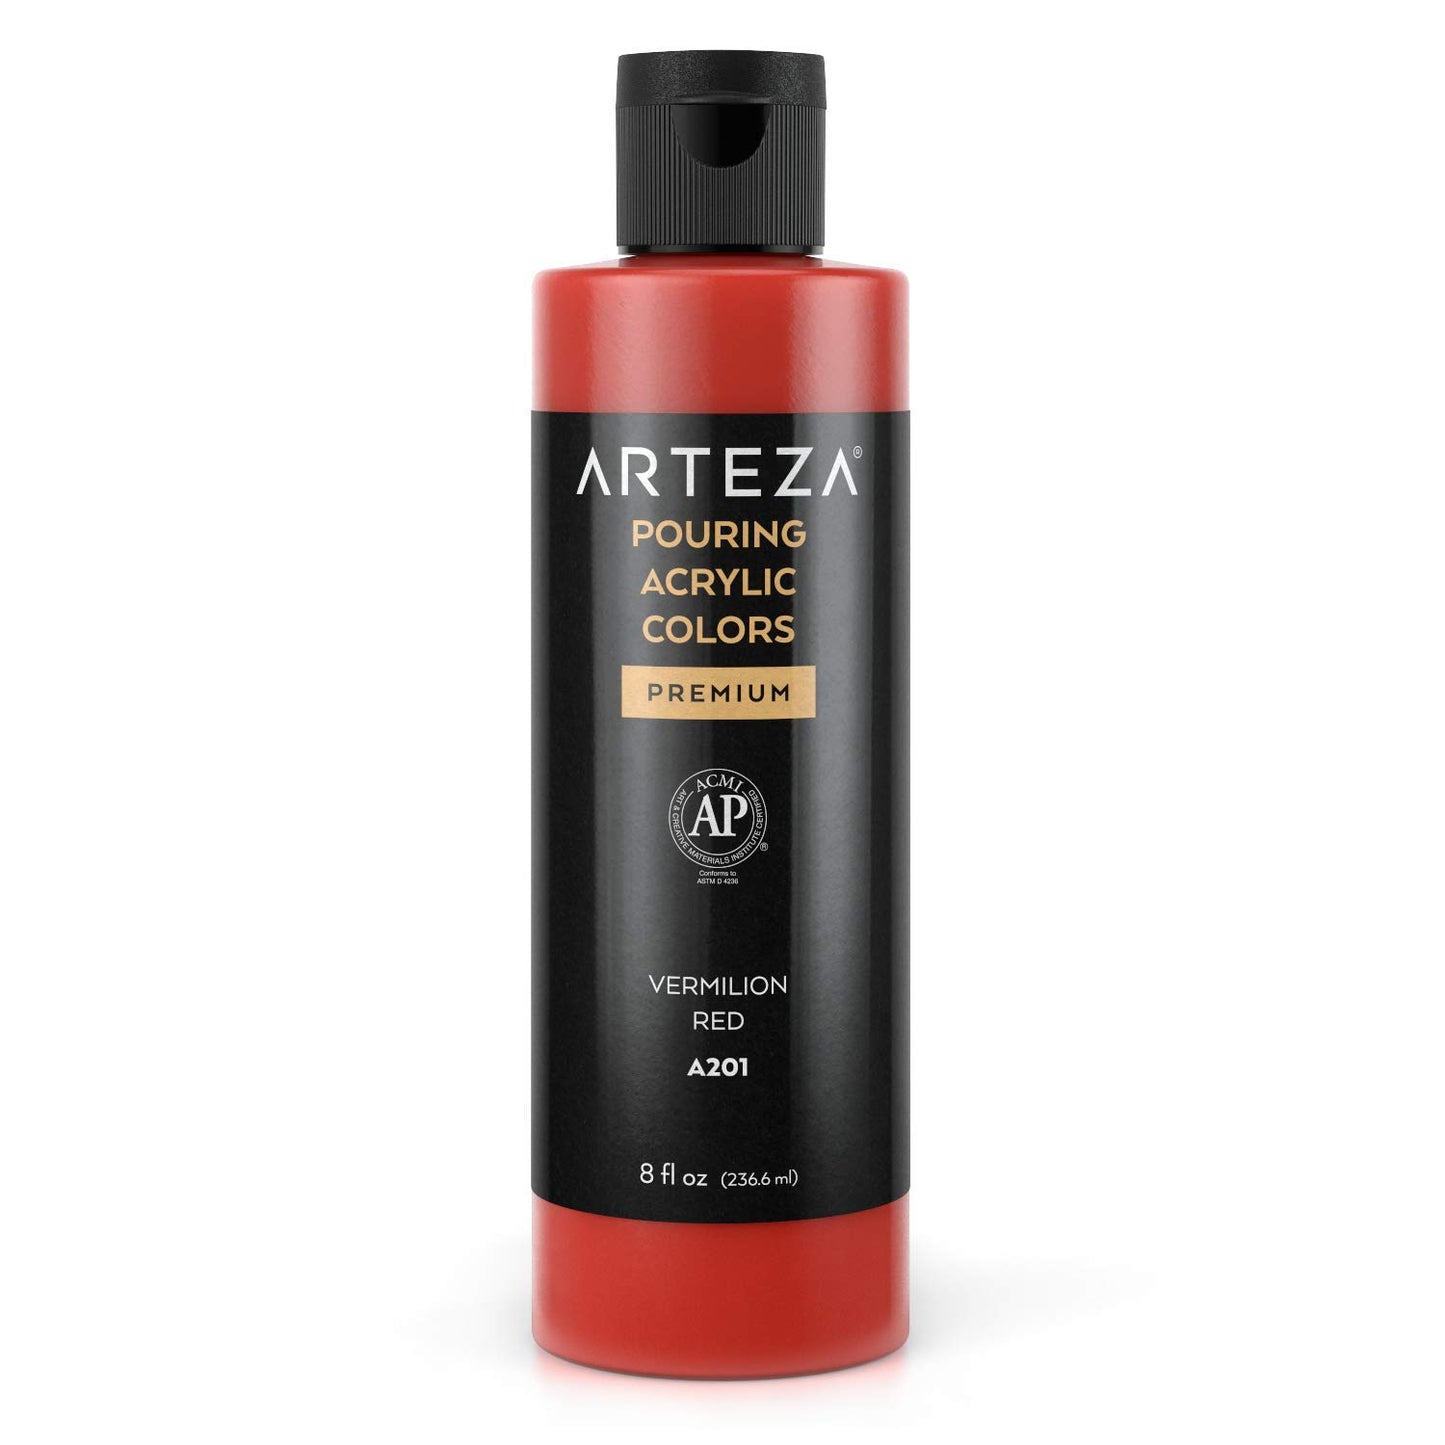 Arteza Pouring Acrylic Paint, 8oz Bottle - A201 Vermilion Red